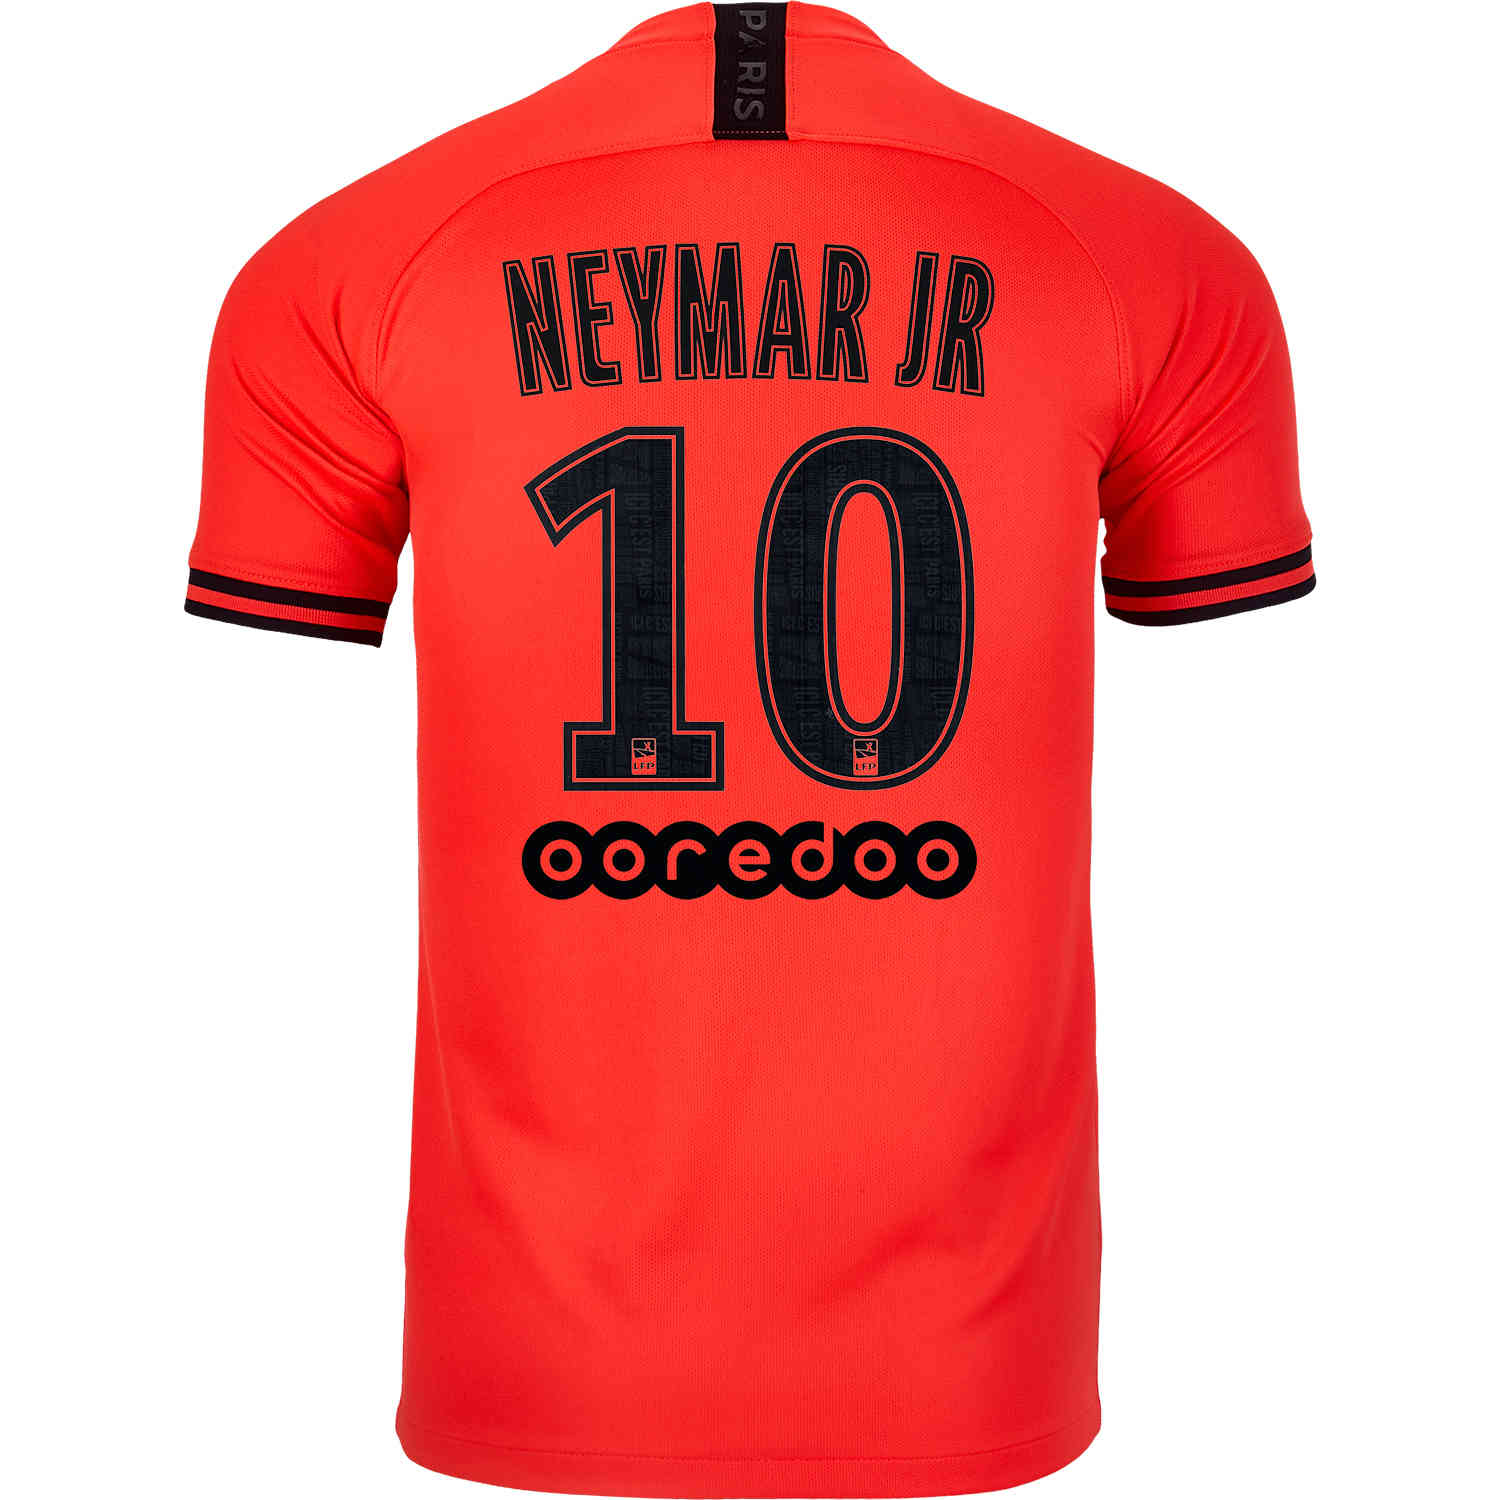 2019/20 Kids Jordan Neymar Jr PSG Away Jersey - SoccerPro